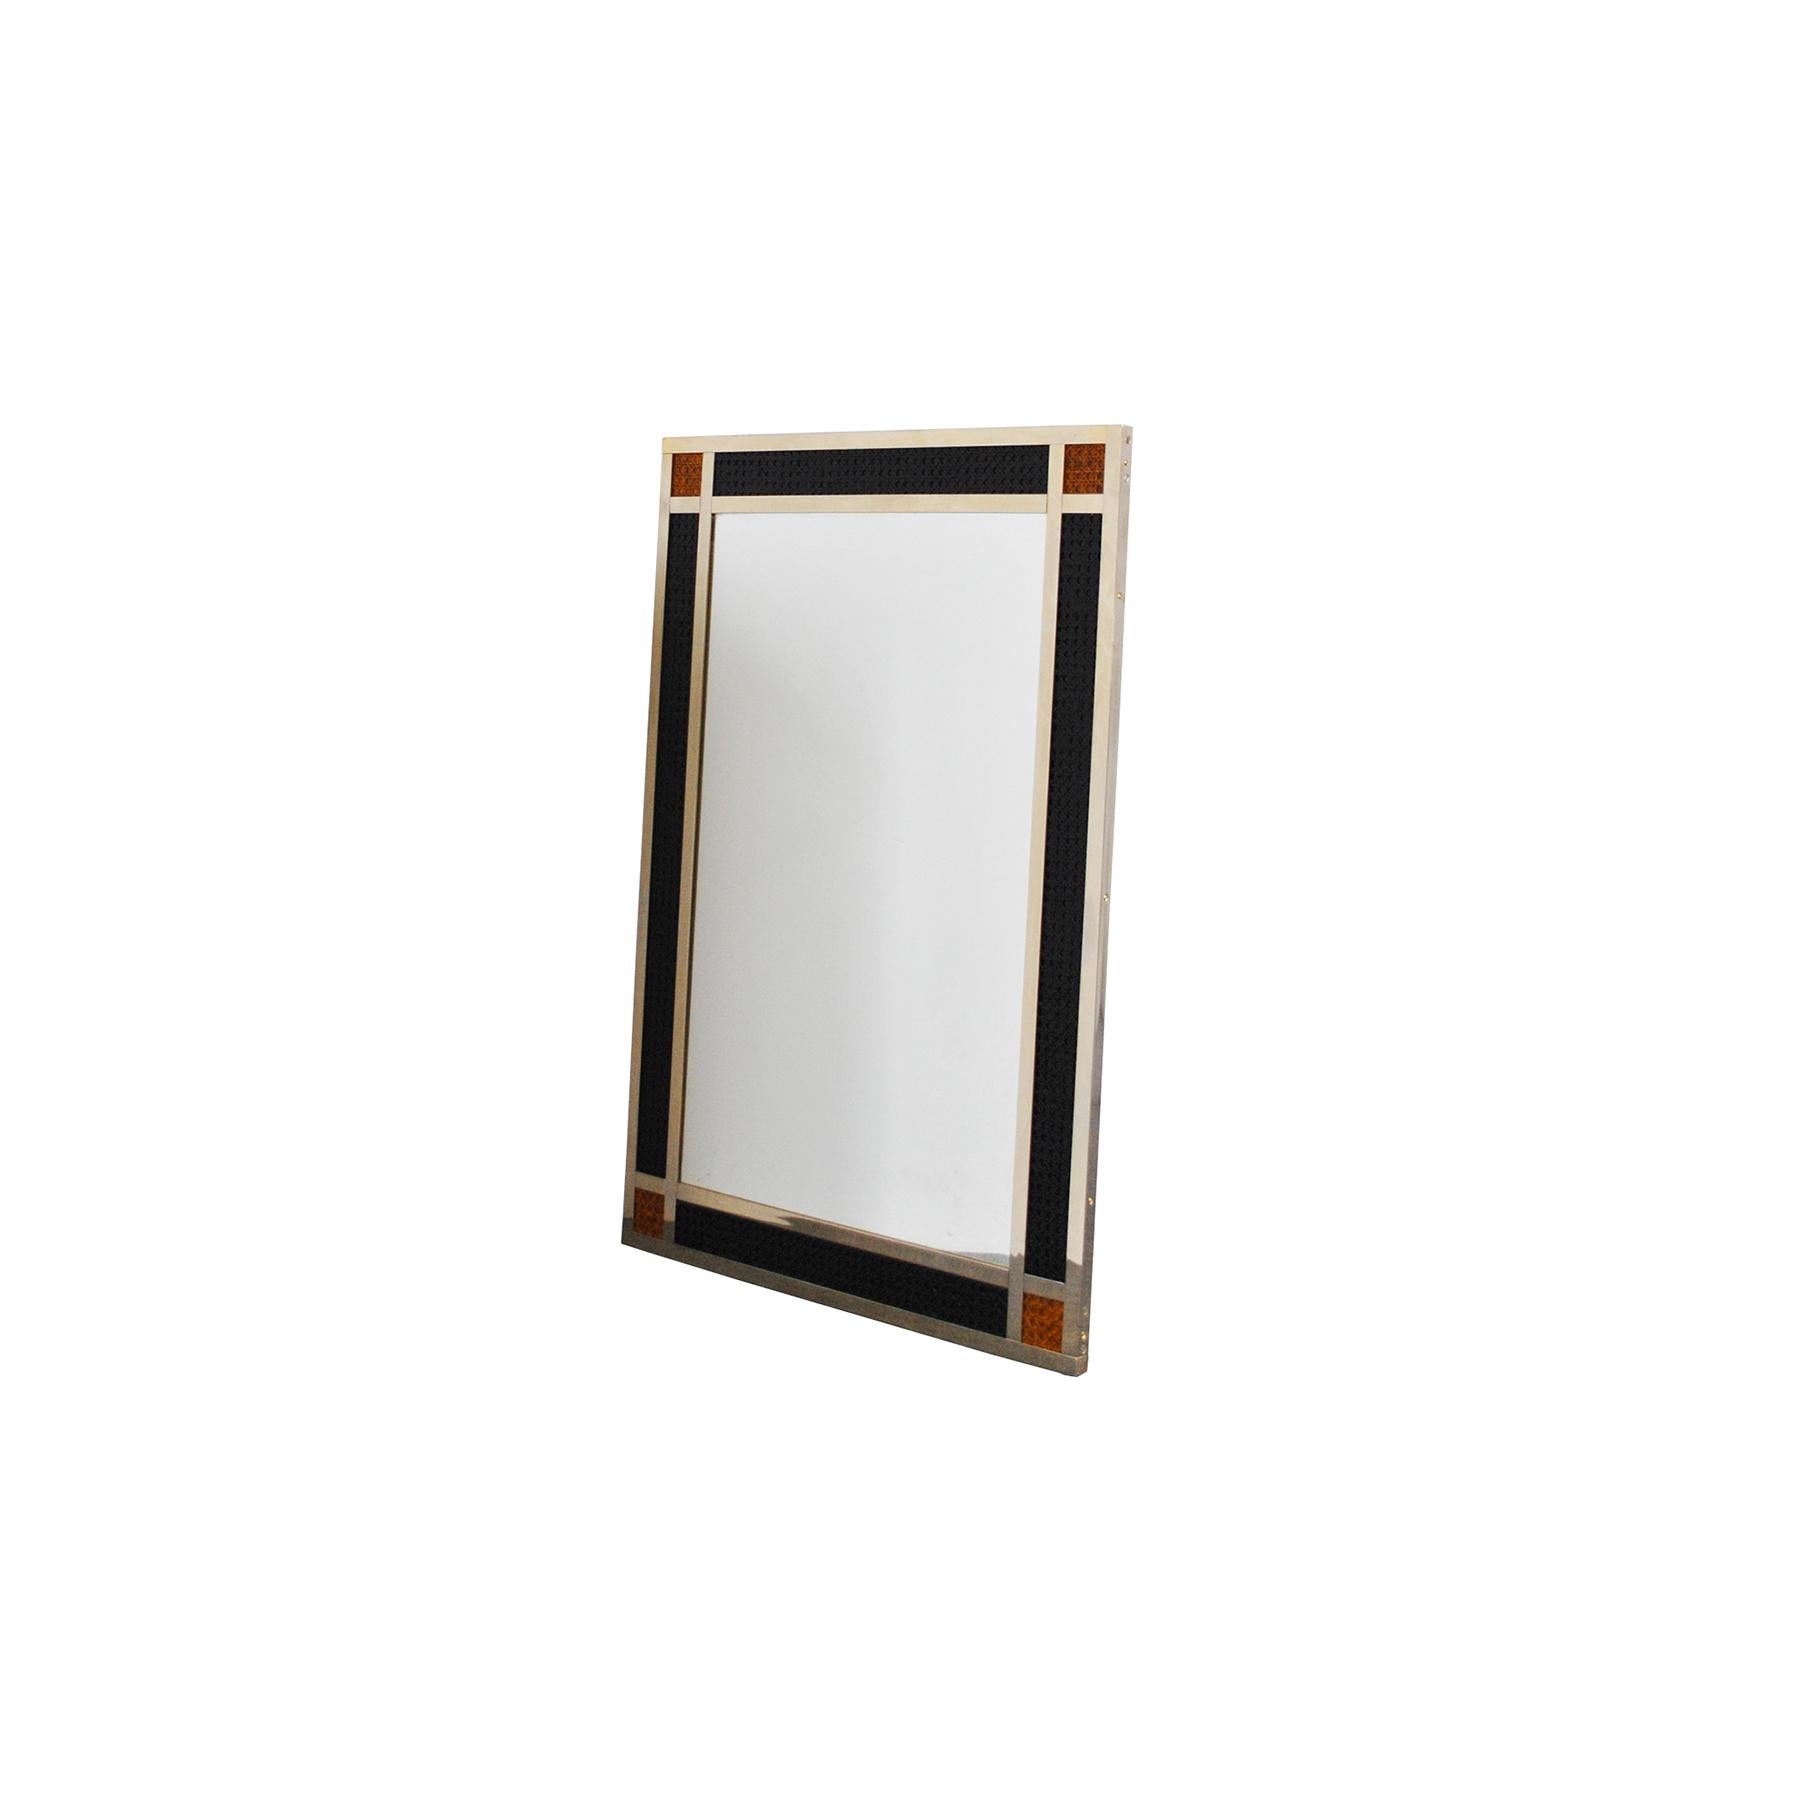 Mirror frame in brass and Vienna straw.